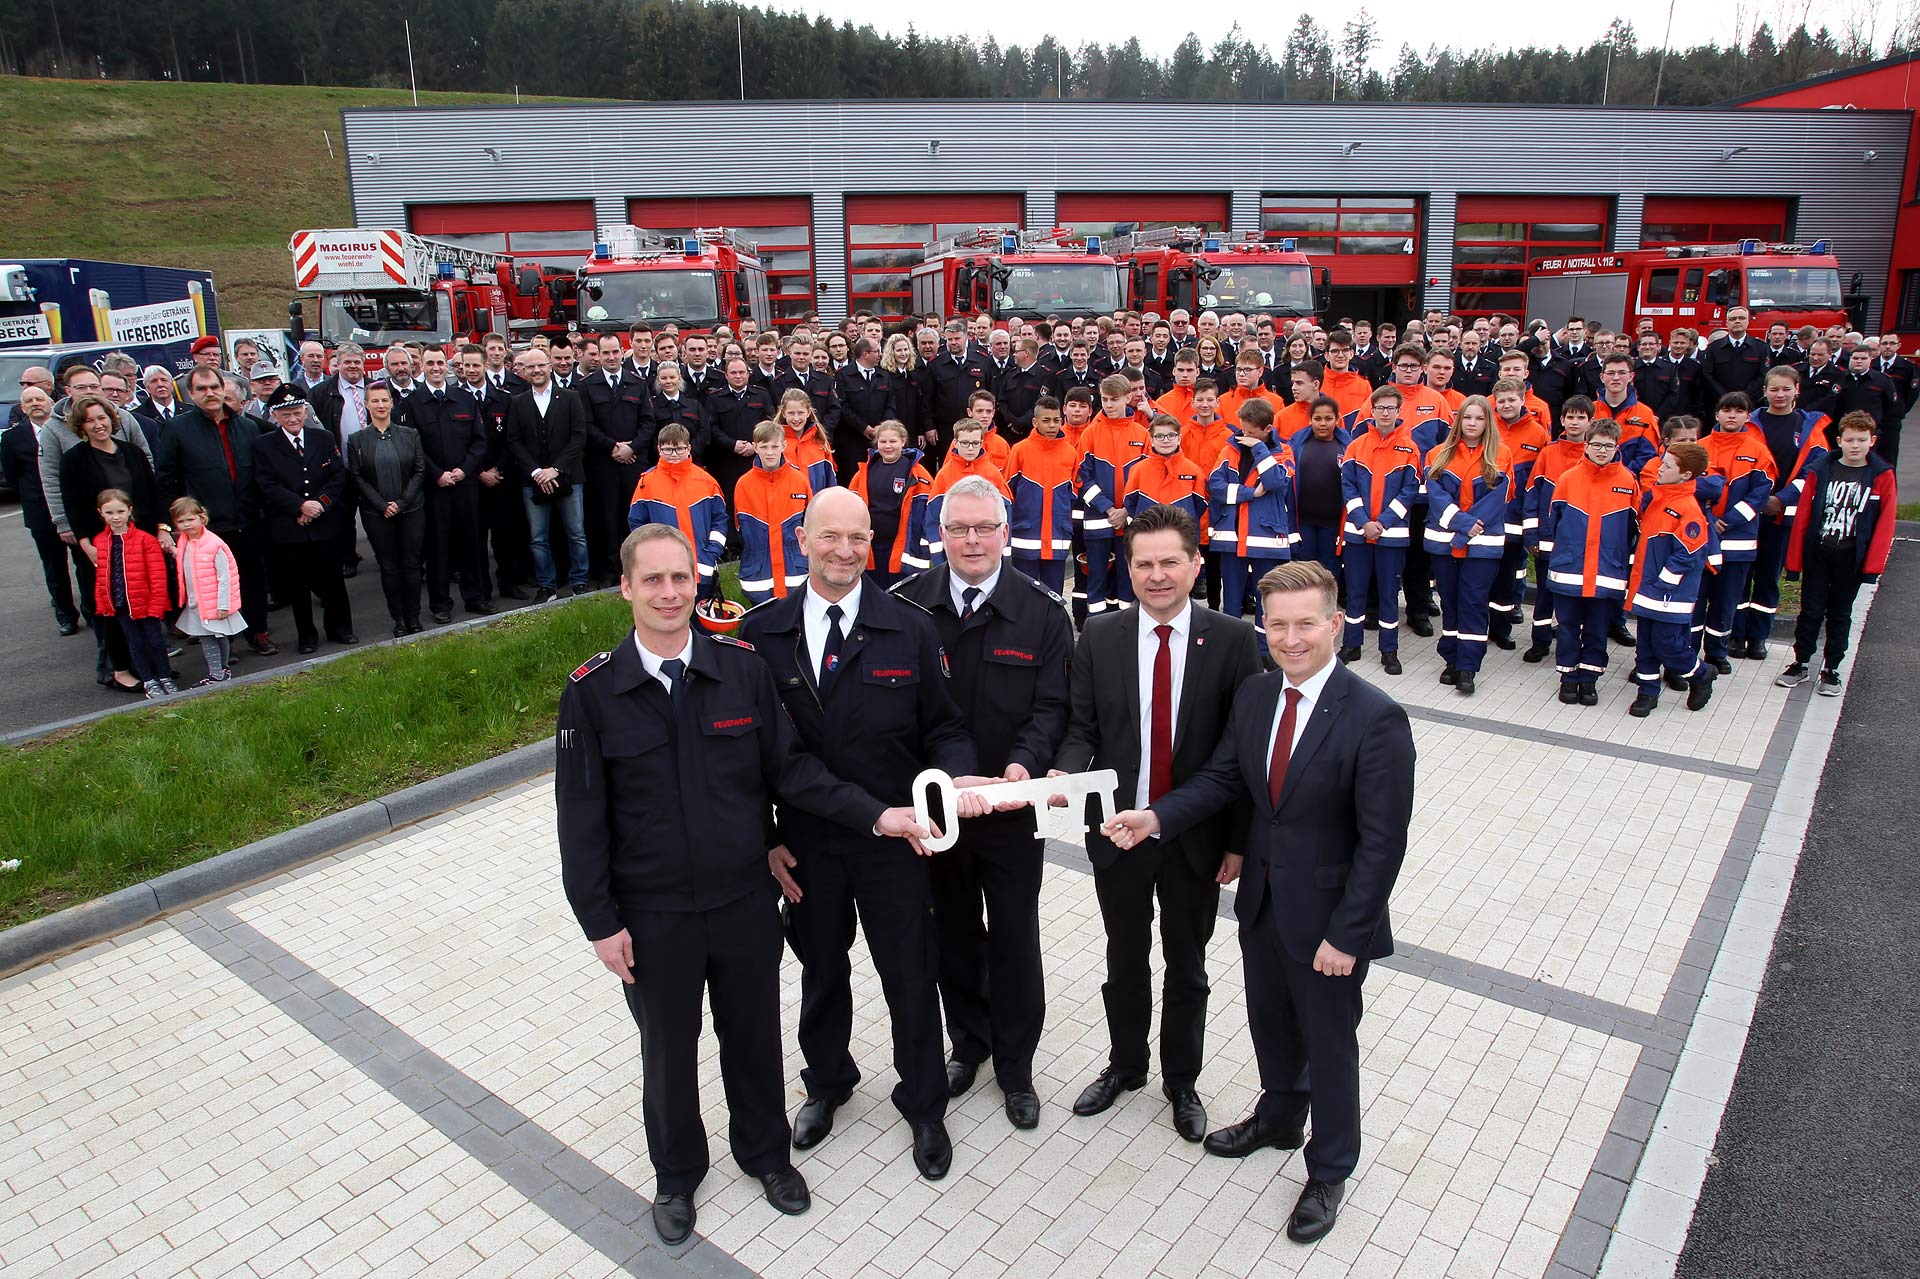 Jahresdienstbesprechung der Feuerwehr und Einweihung des neuen Feuerwehrgerätehauses an der Bremigswiese